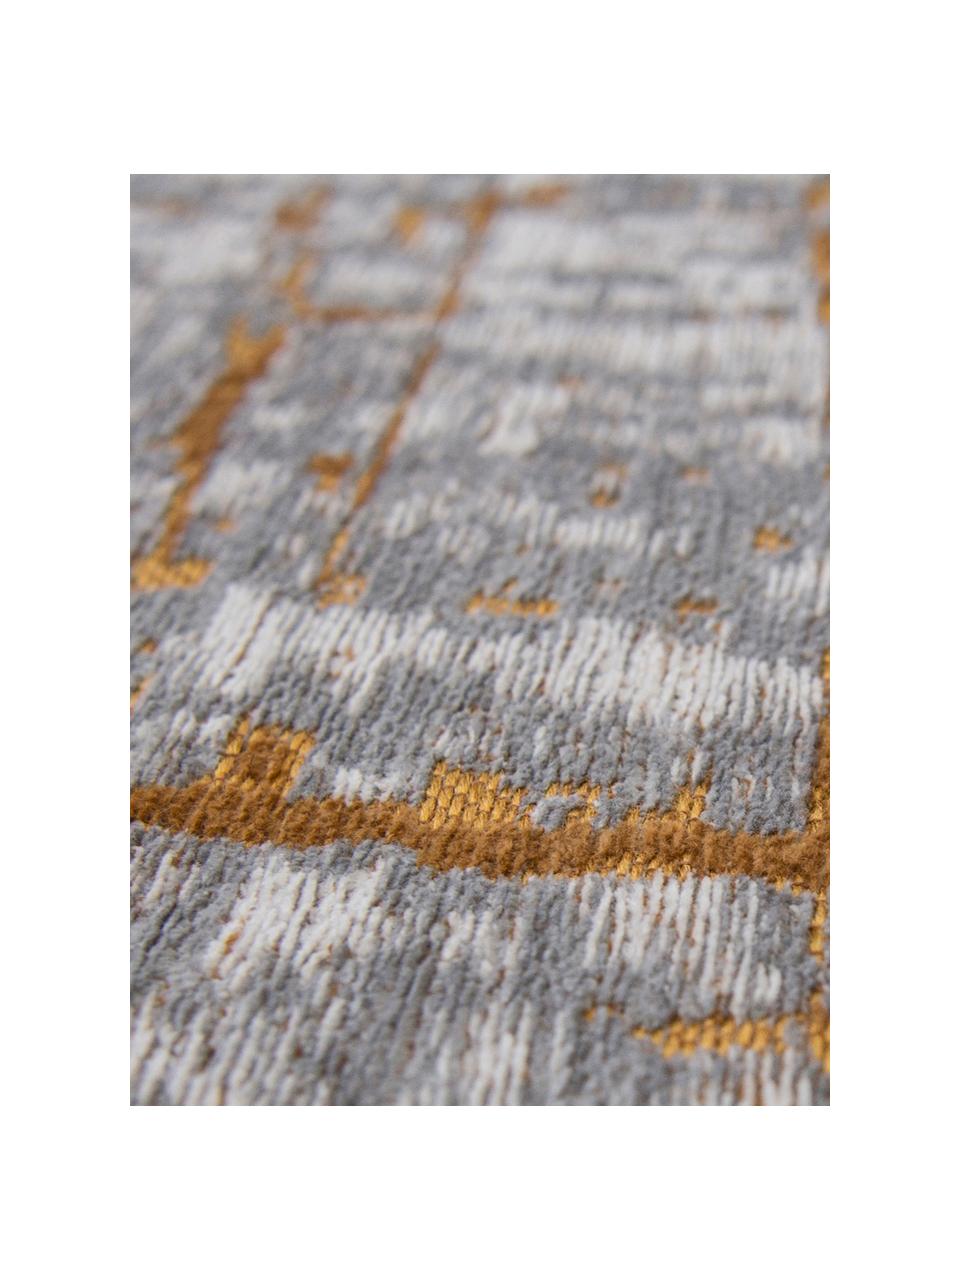 Design Niederflor-Teppich Griff, Flor: 85% Baumwolle, 15% hochgl, Braun, Grau, Beige, B 170 x L 240 cm (Größe M)